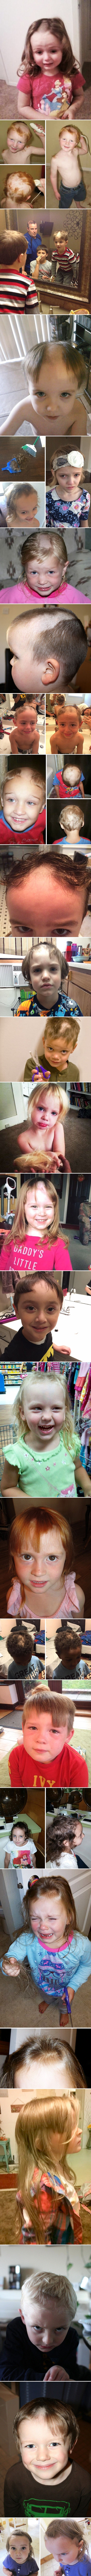 Urnebesne slike djece koja su htjela biti sam svoj frizer!